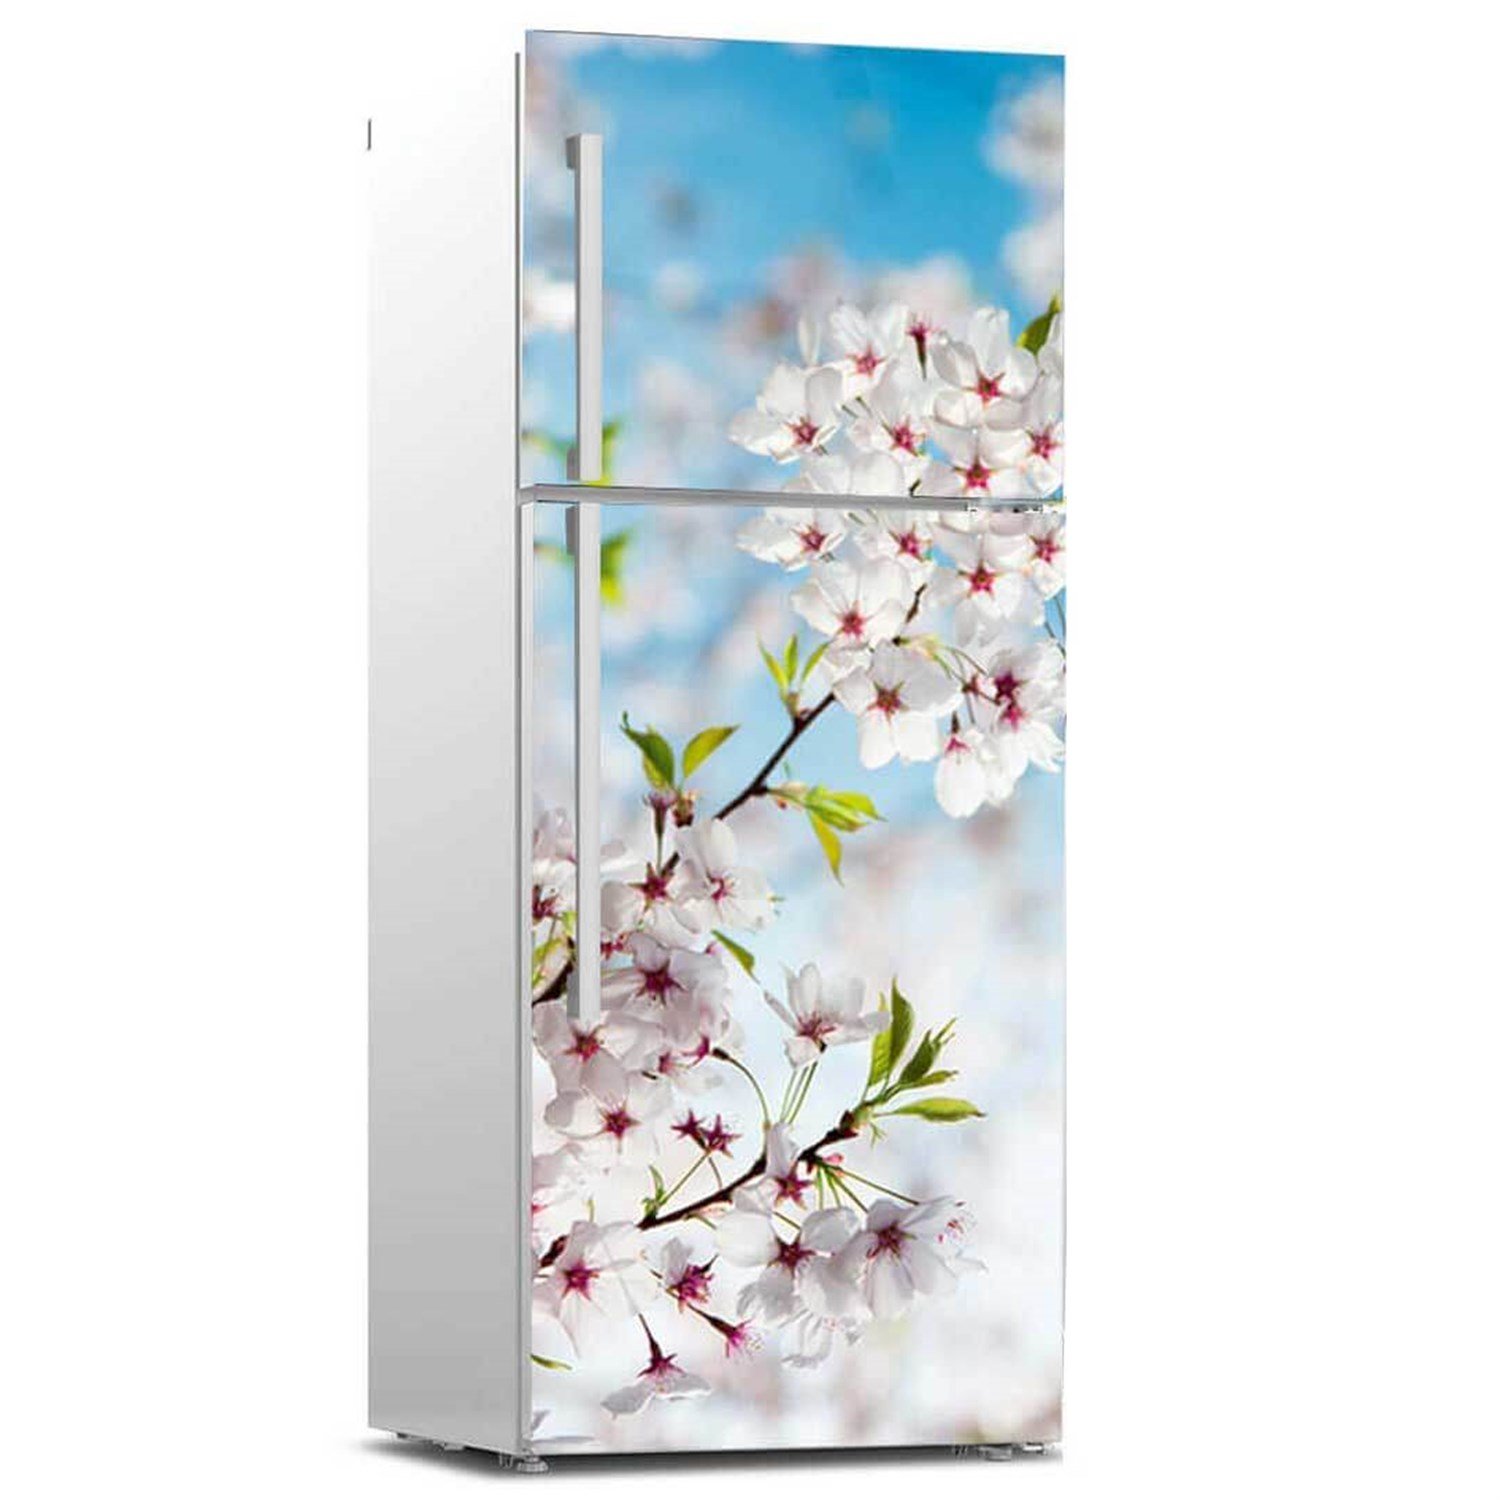 Çiçek Model Buzdolabı Sticker Kaplama | Okularenkkat.com